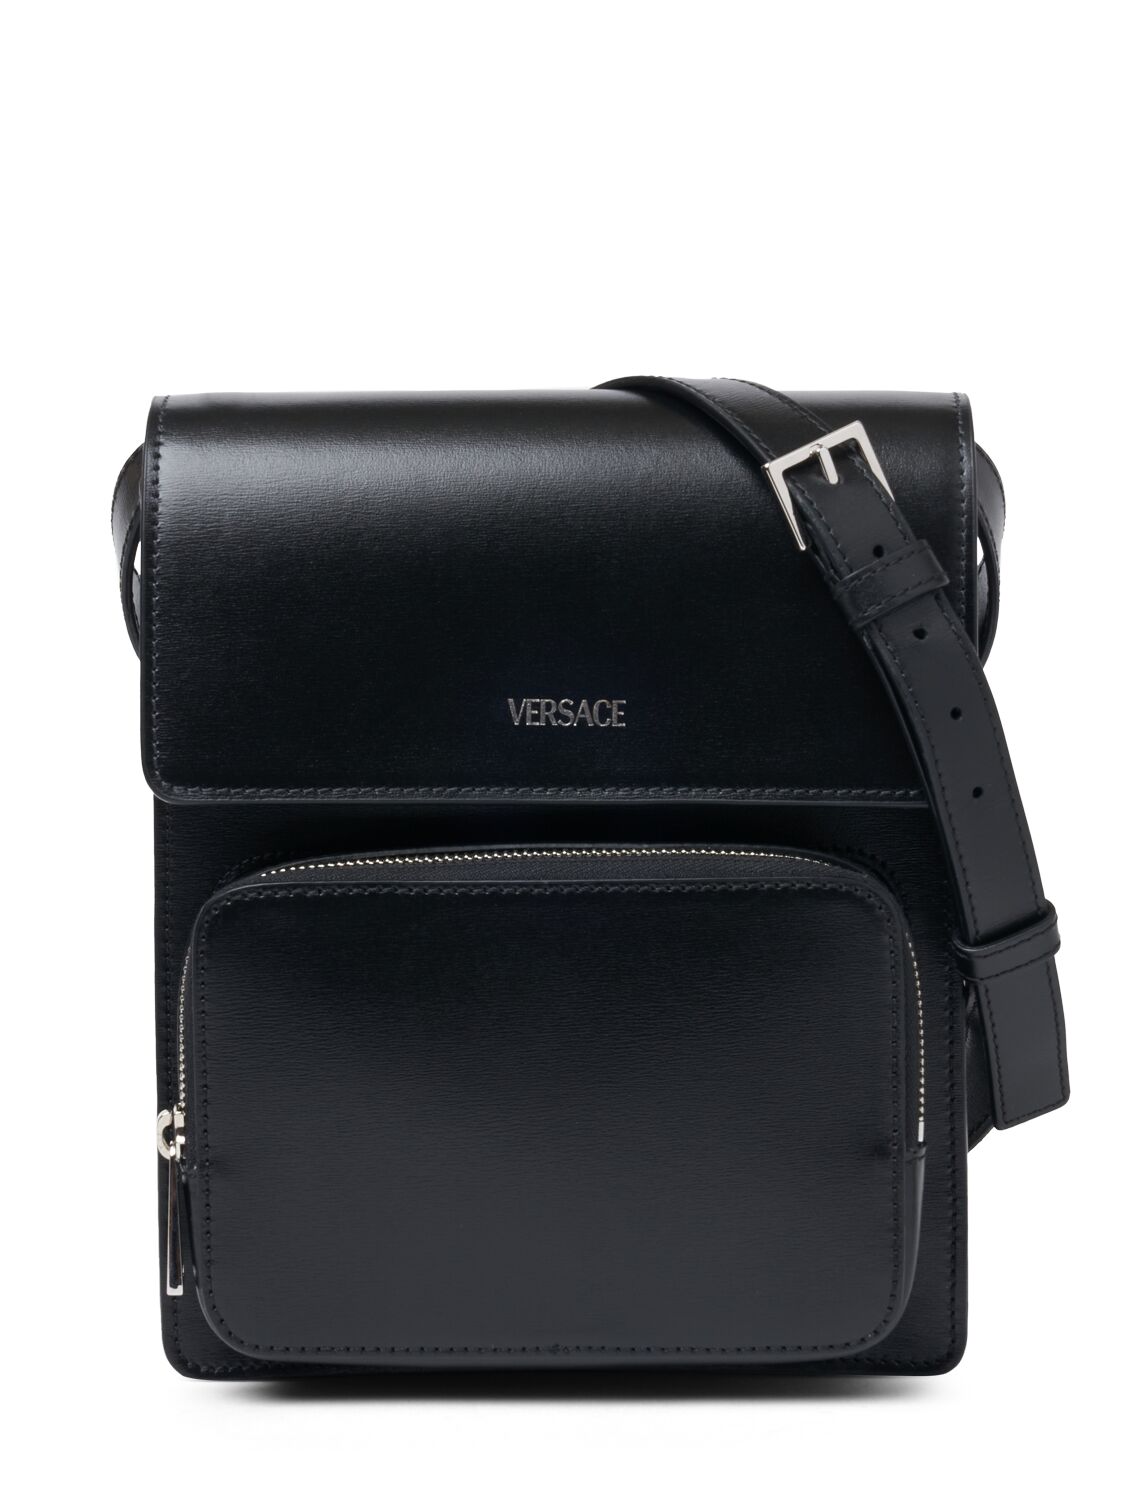 Versace Vertical Leather Logo Messenger Bag In Black